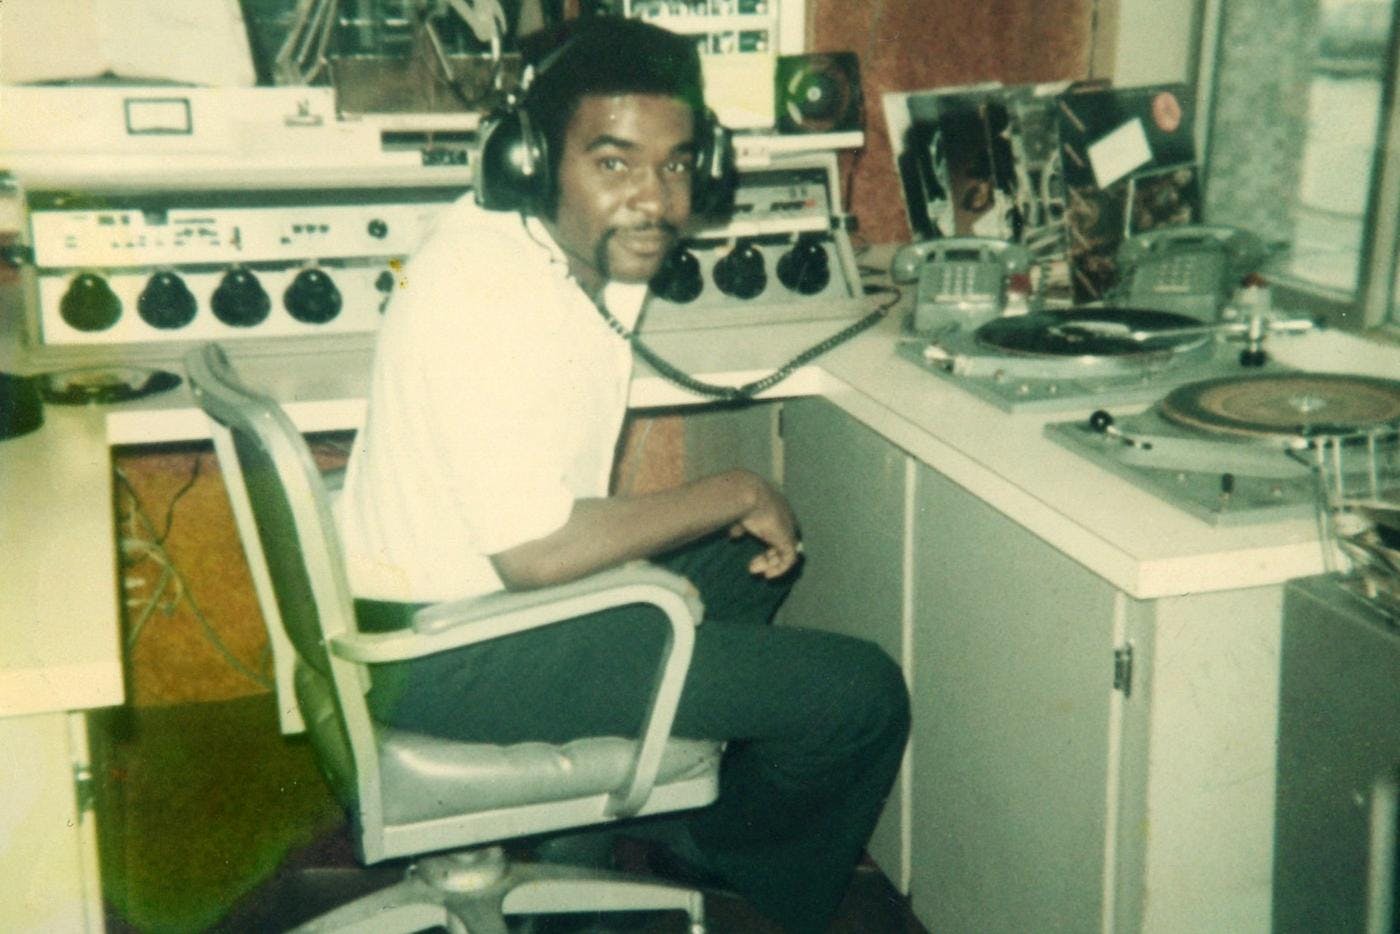 Robert L. Scott in a radio booth wearing headphones